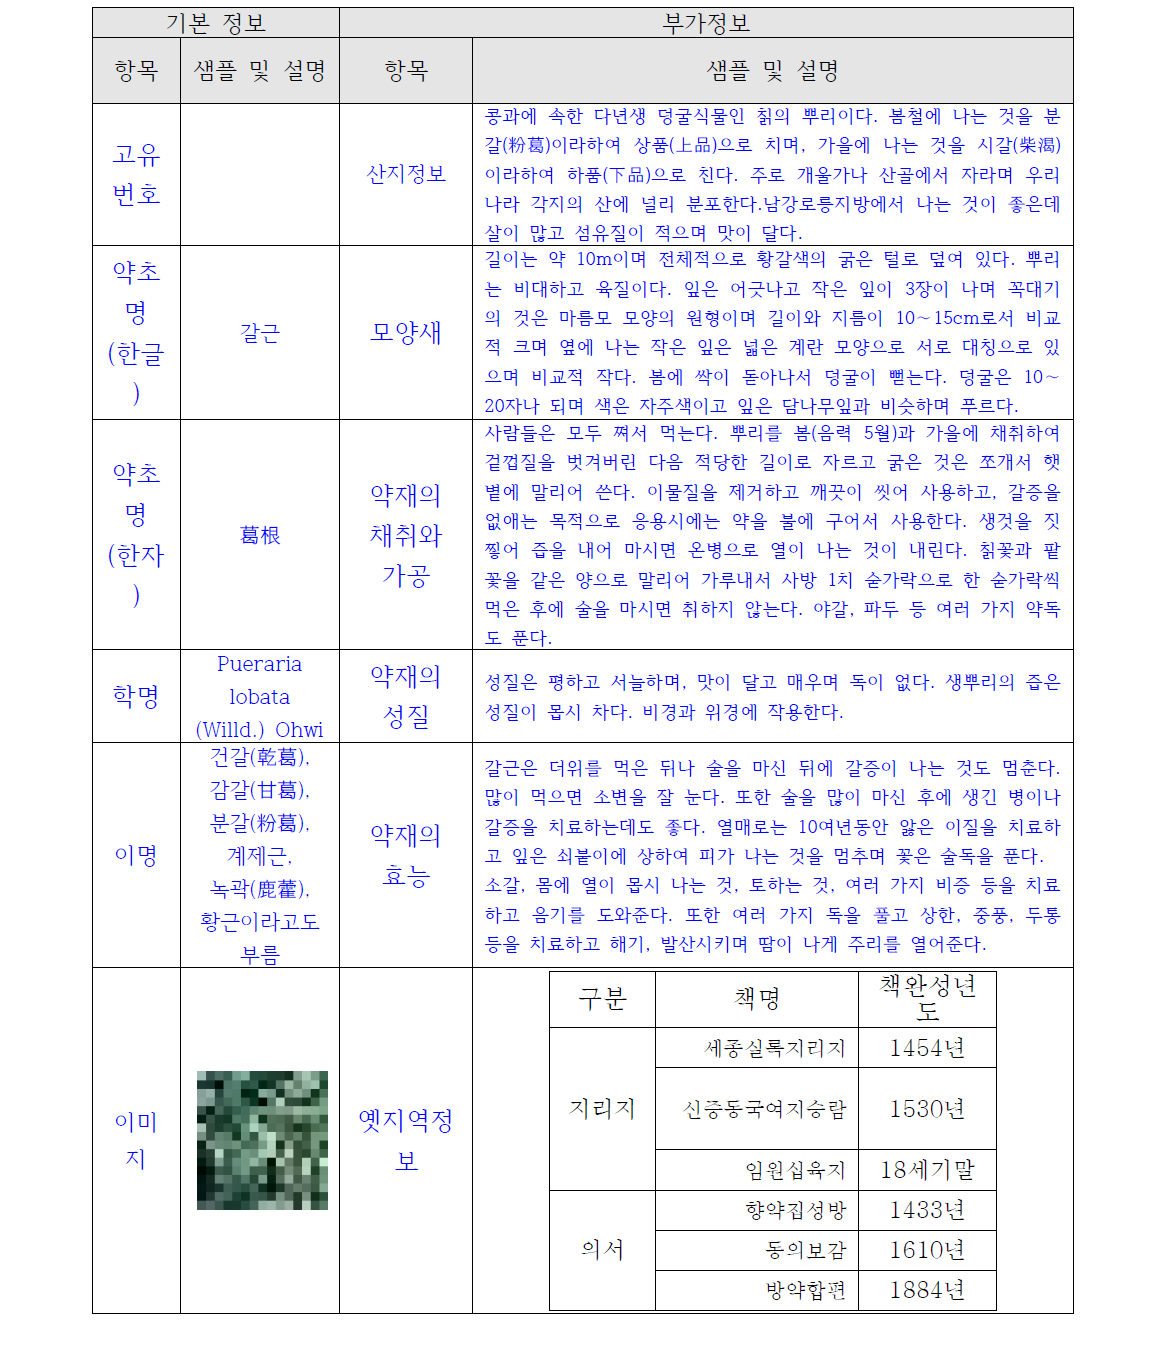 Information for Korean medicine